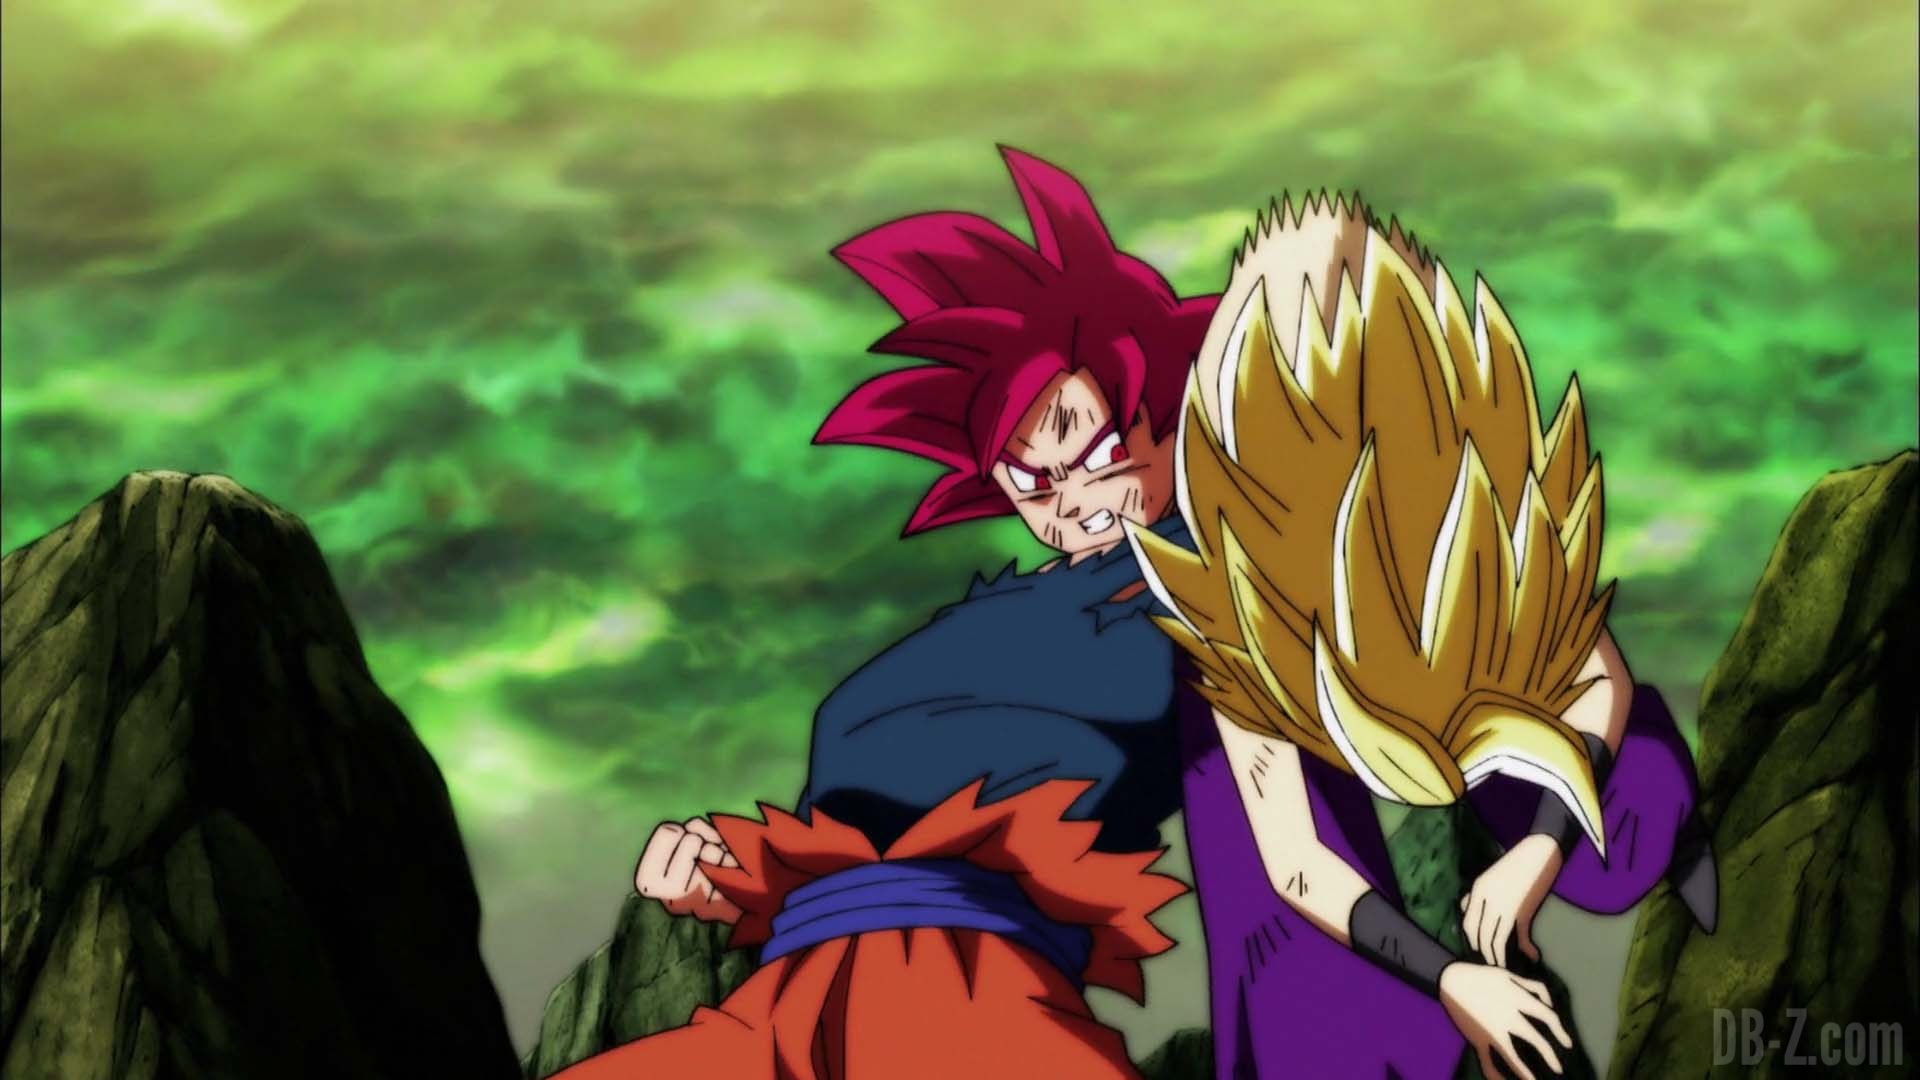 Dragon Ball Super Episode 114 0114 Goku Super Saiyan God Caulifla